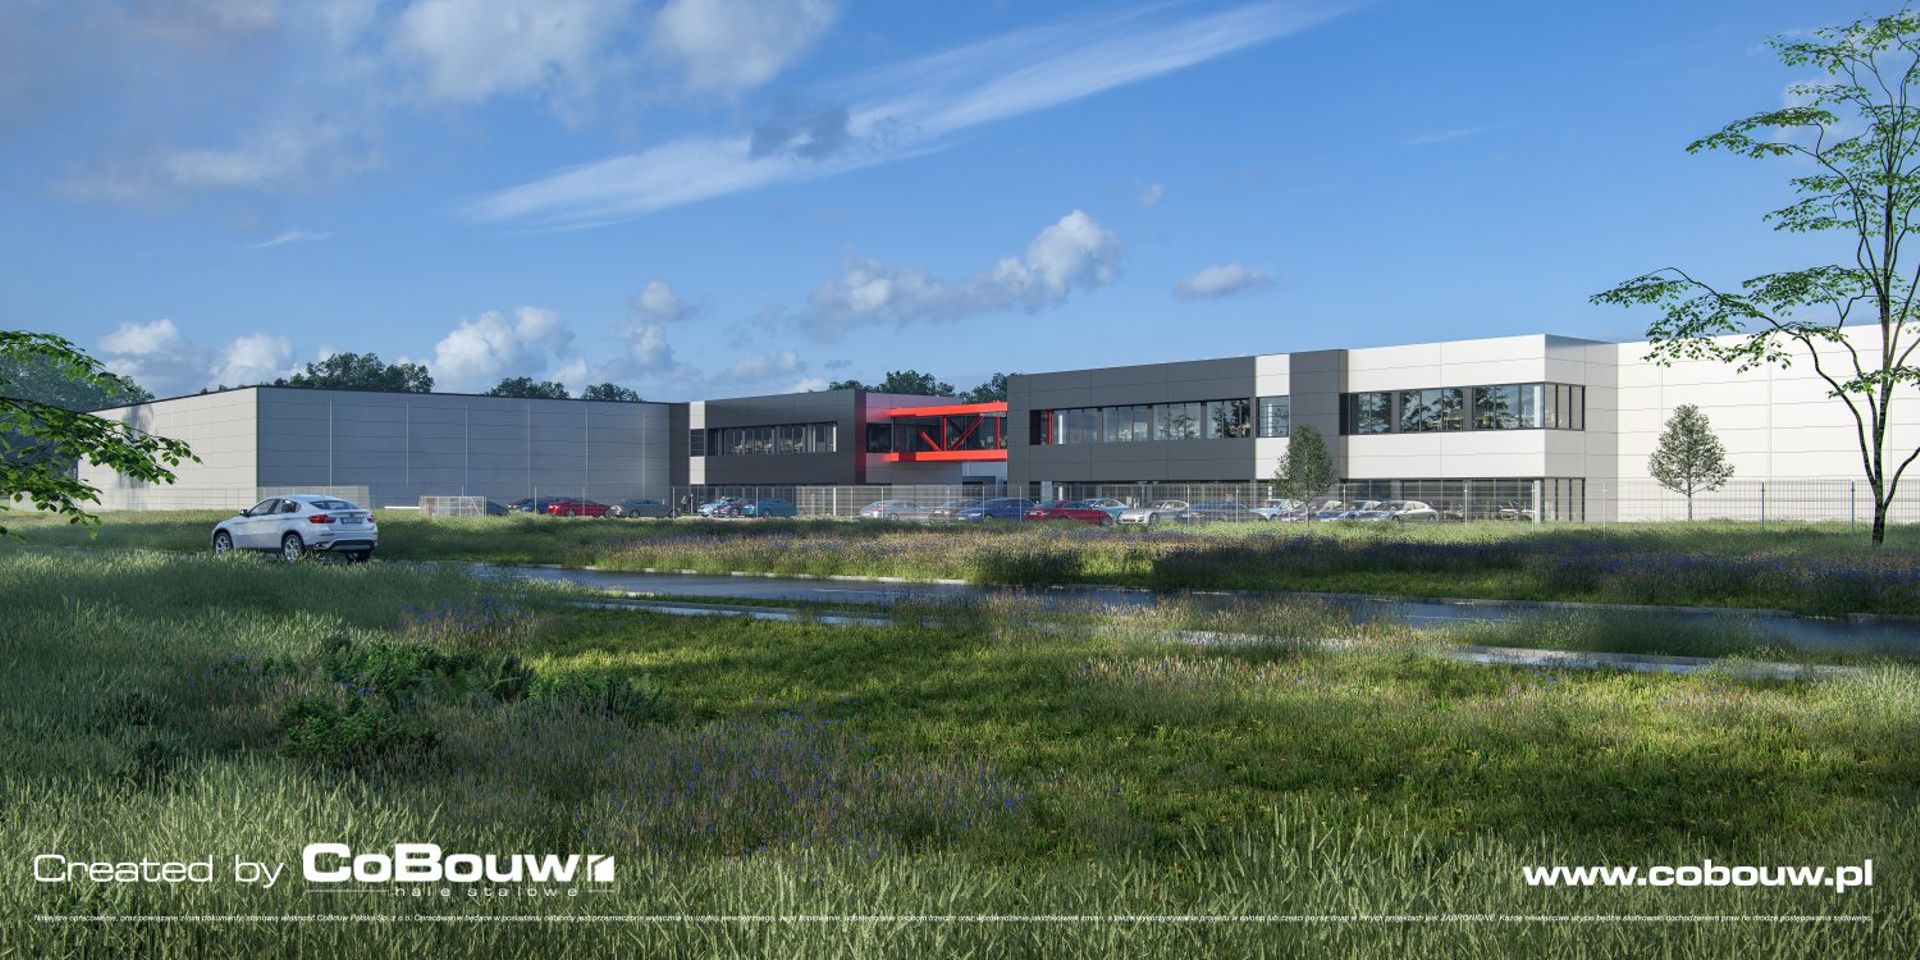 Turenwerke wybuduje fabrykę na Śląsku